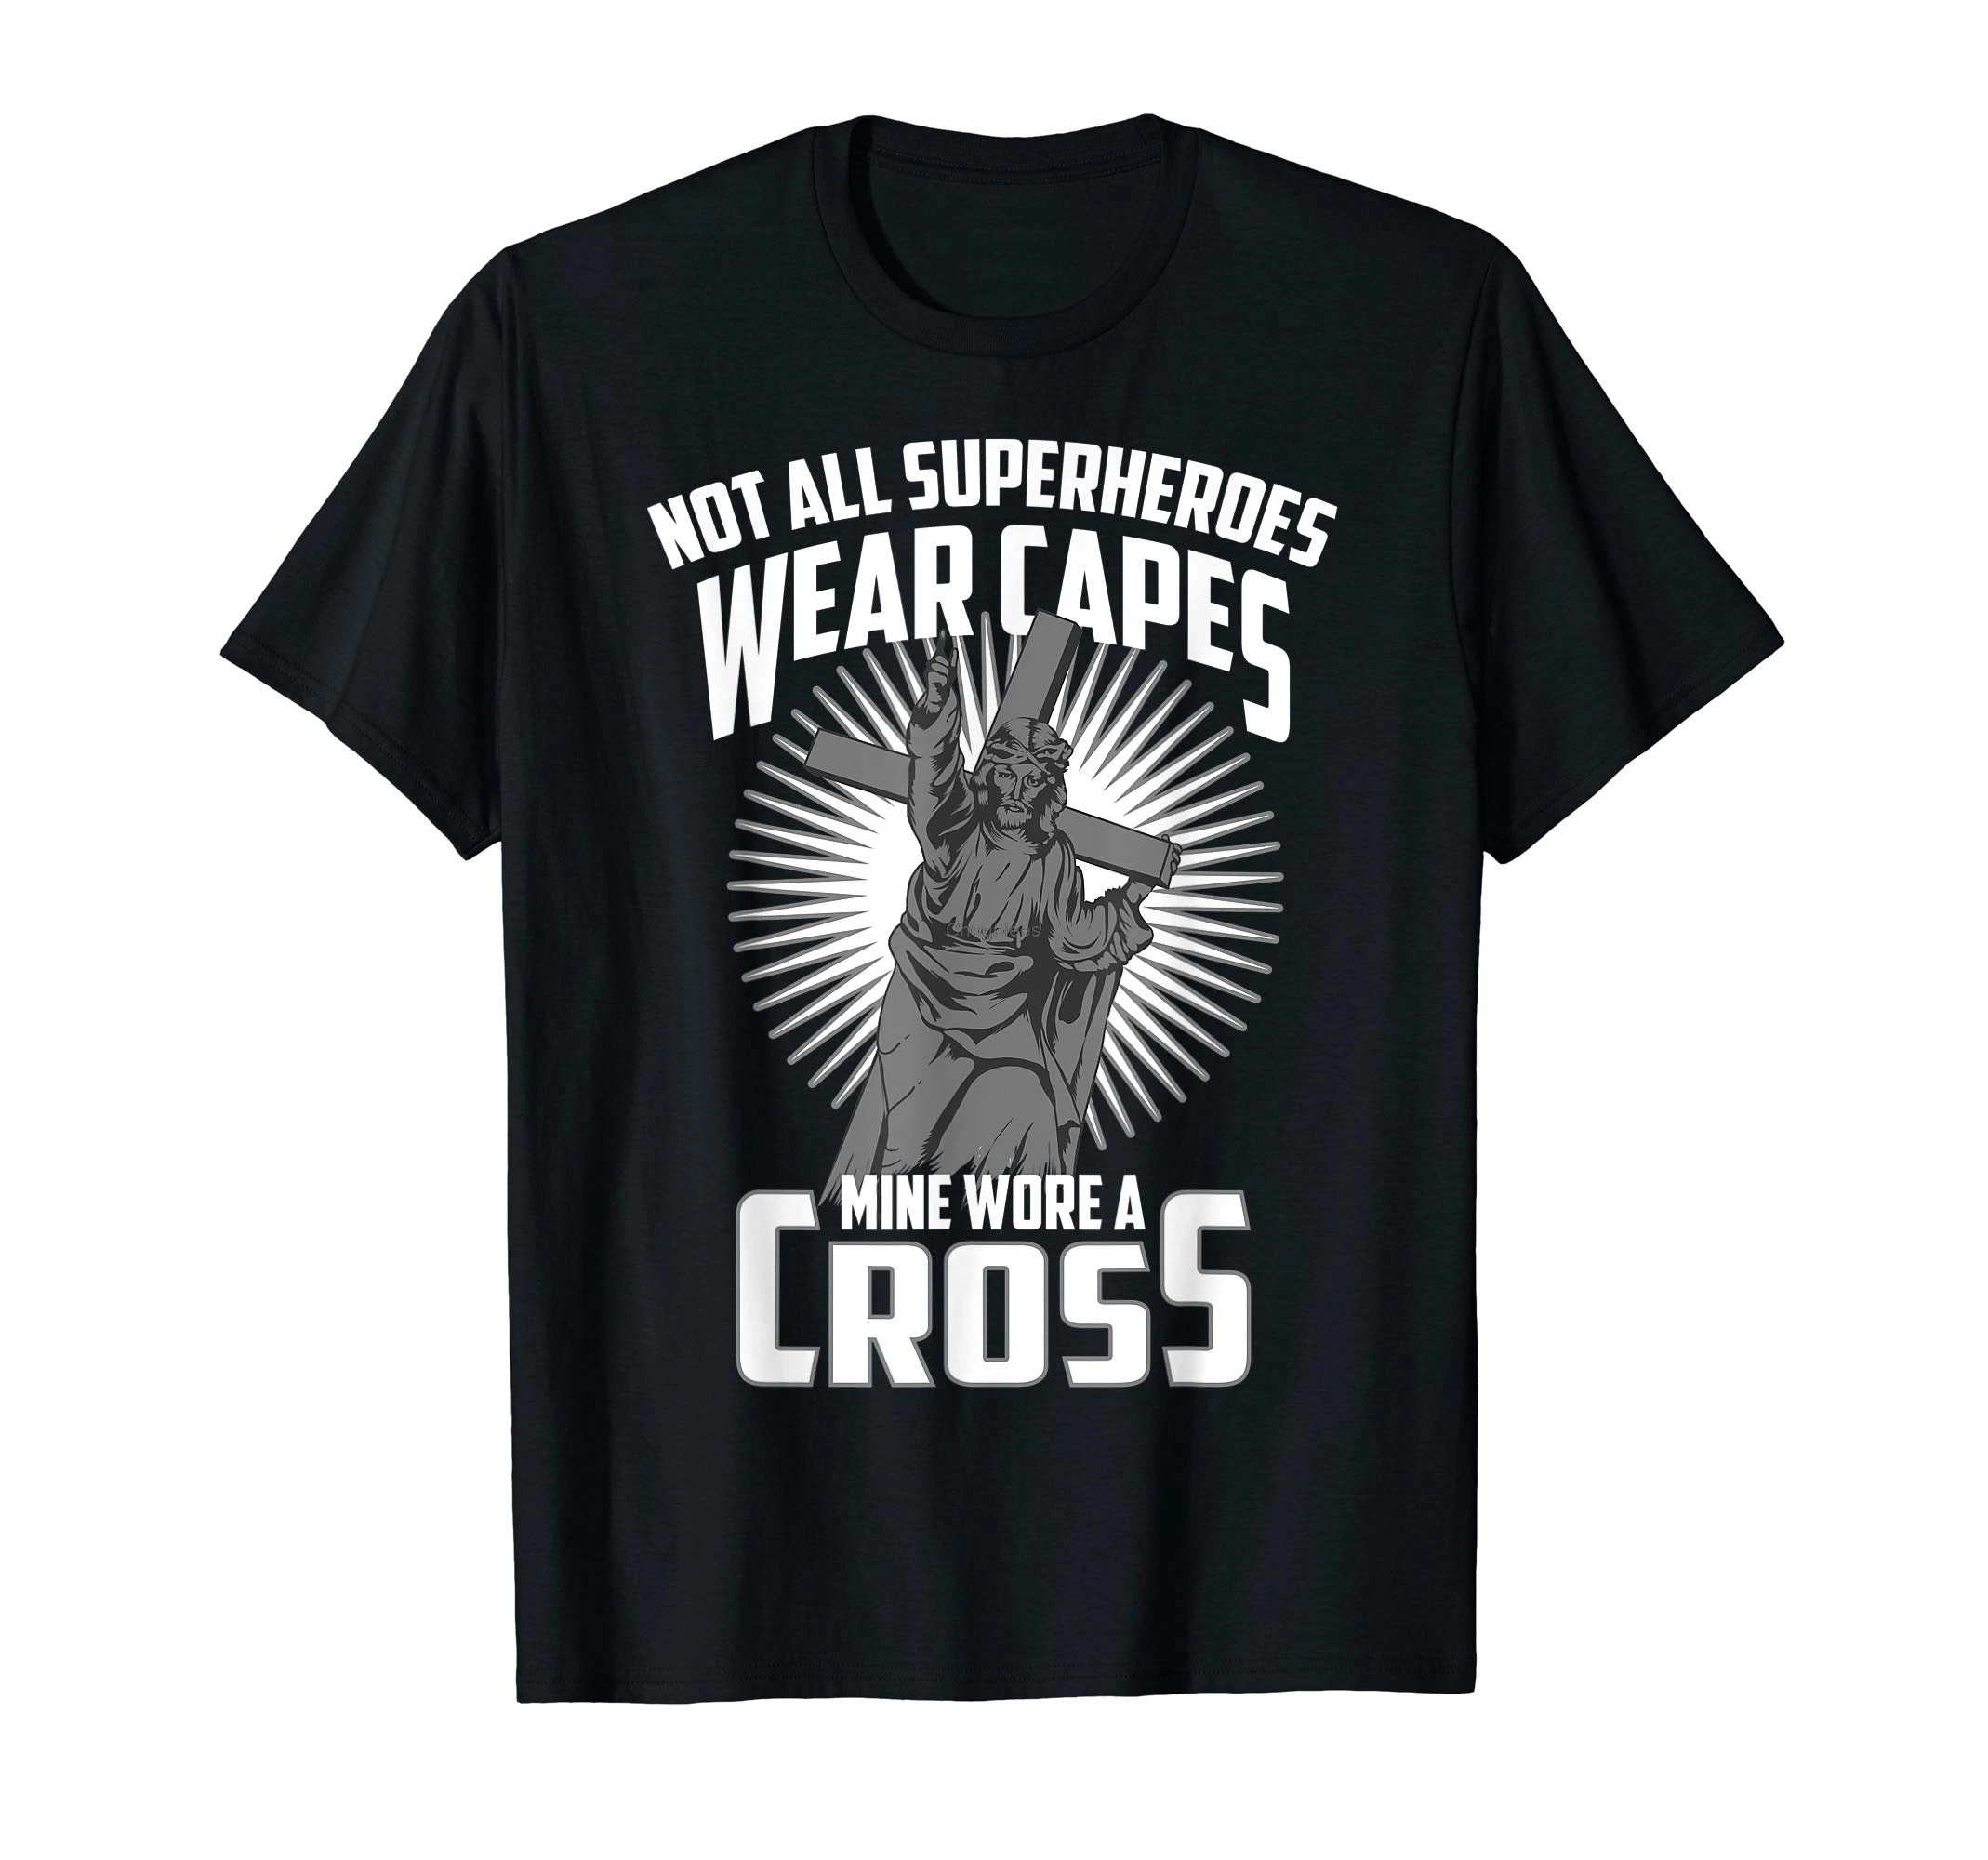 Не все накидки супергероев моя надела футболку в подарок с изображением Креста